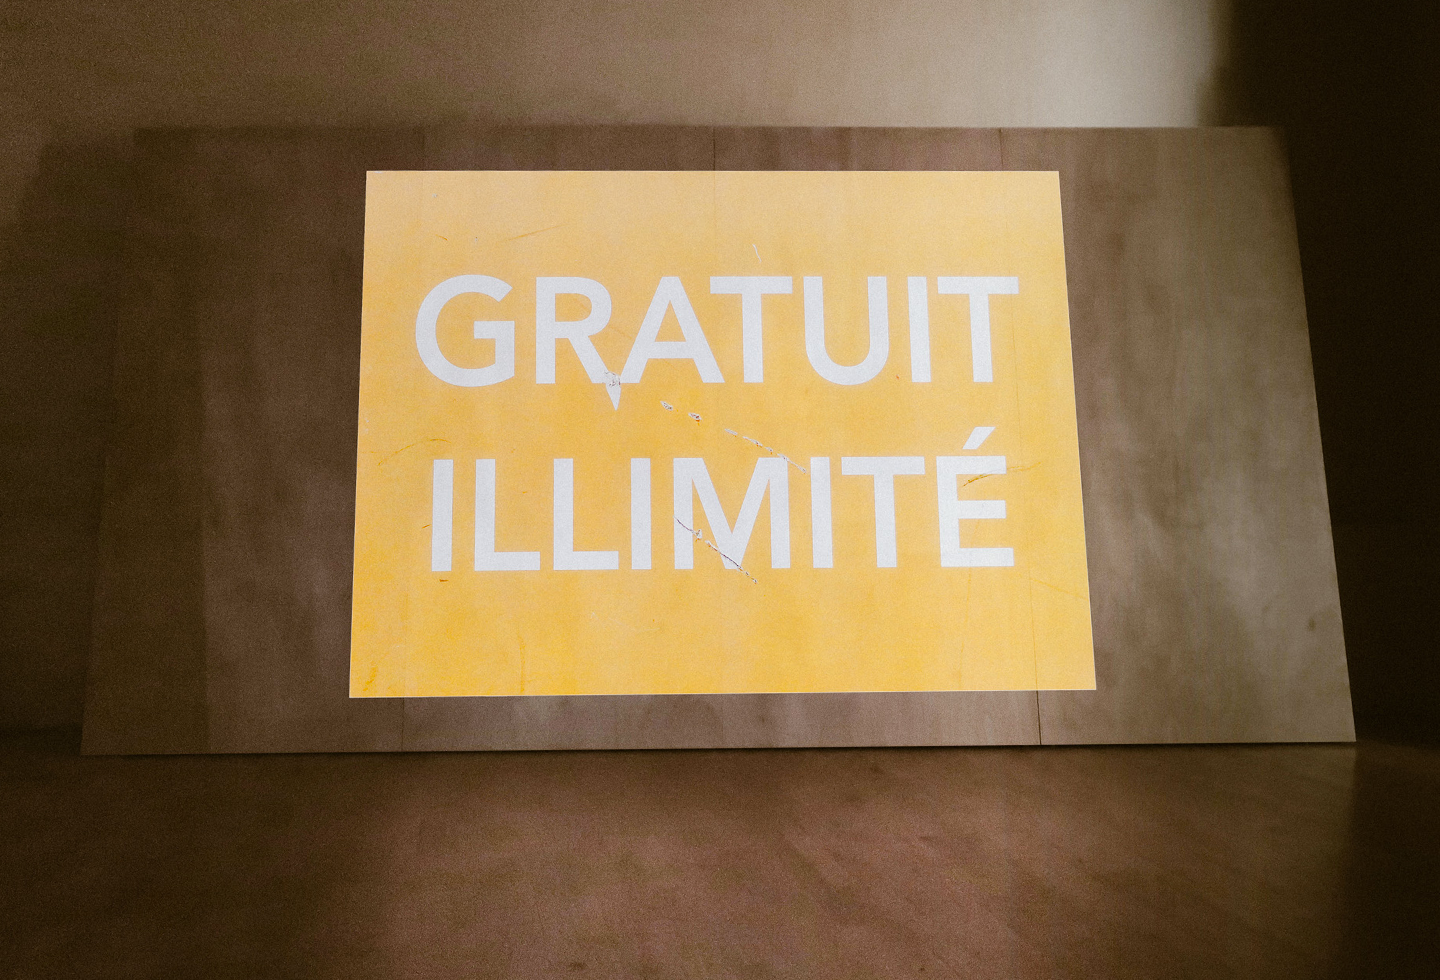 Pierre-Lin Renié, ‘Gratuit-illimité’, 2018, exposition ‘Offset’ au CDLA, commissariat Claude Closky, 2023